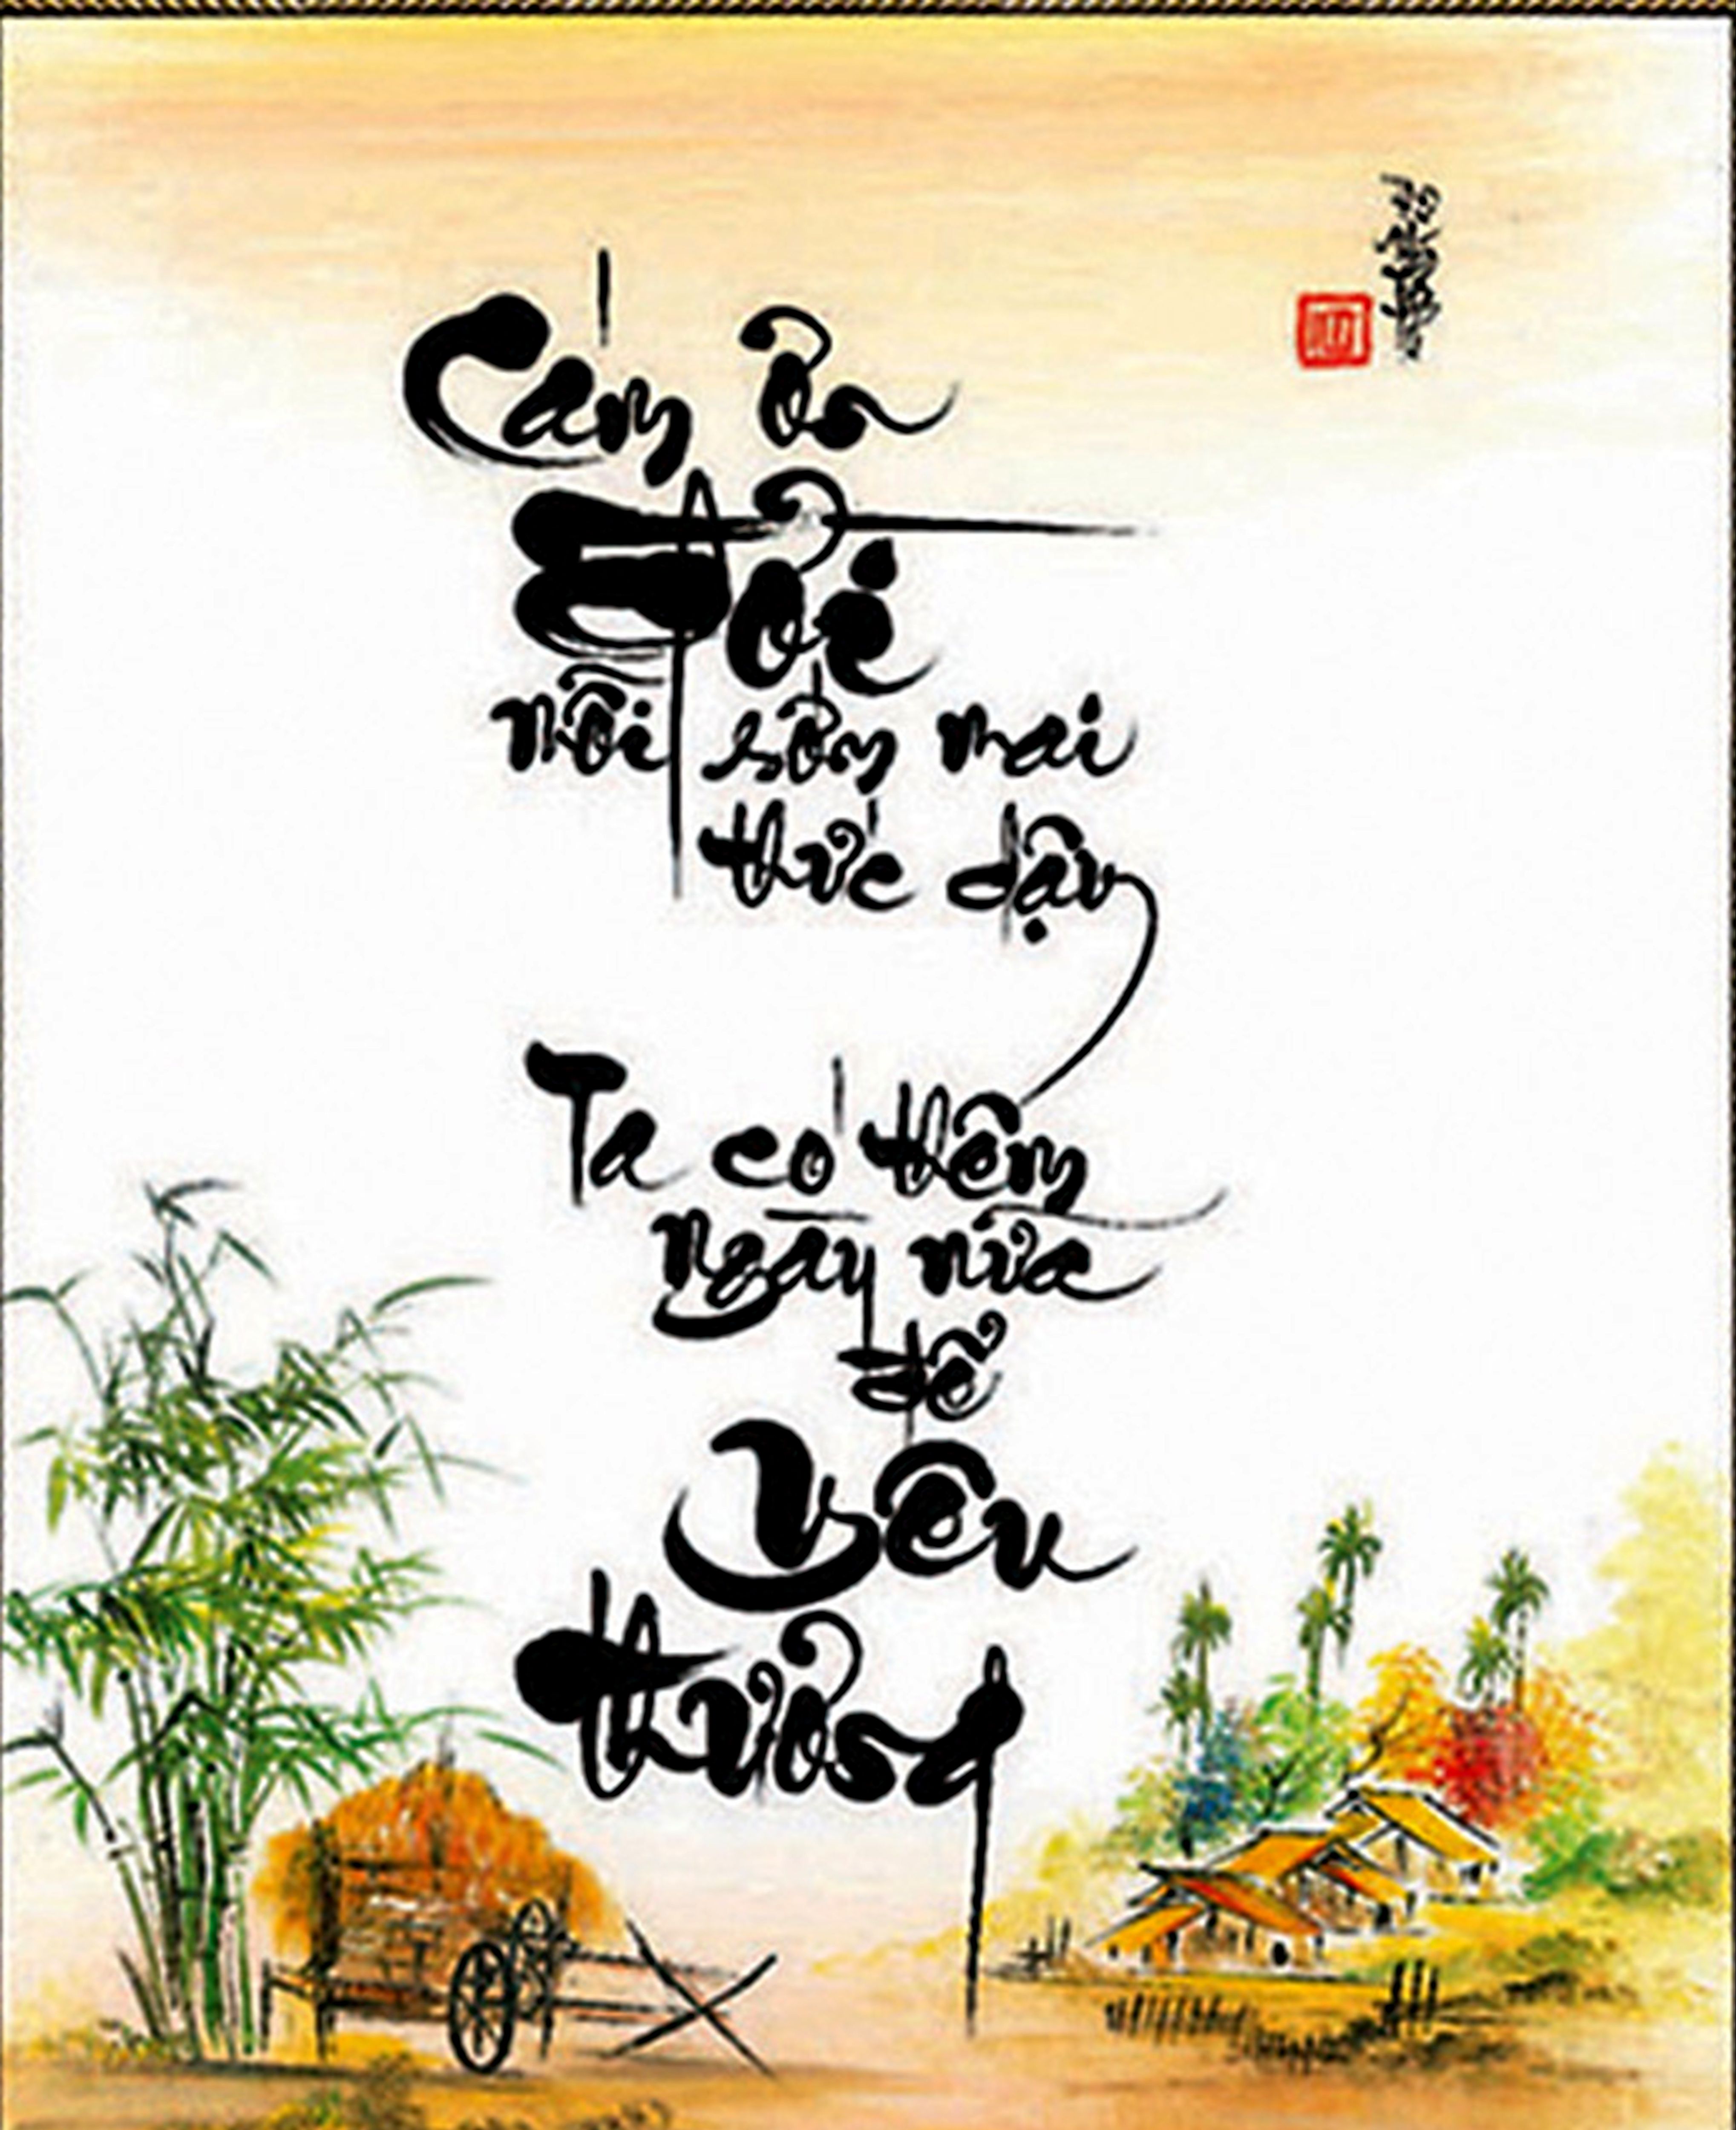 Tranh thư pháp là một hình thức nghệ thuật truyền thống của người Trung Quốc, được nhiều người yêu thích trên khắp thế giới. Tại đây, bạn sẽ được tận hưởng những bức tranh đẹp tuyệt vời với những nét cọ bút thần thánh.